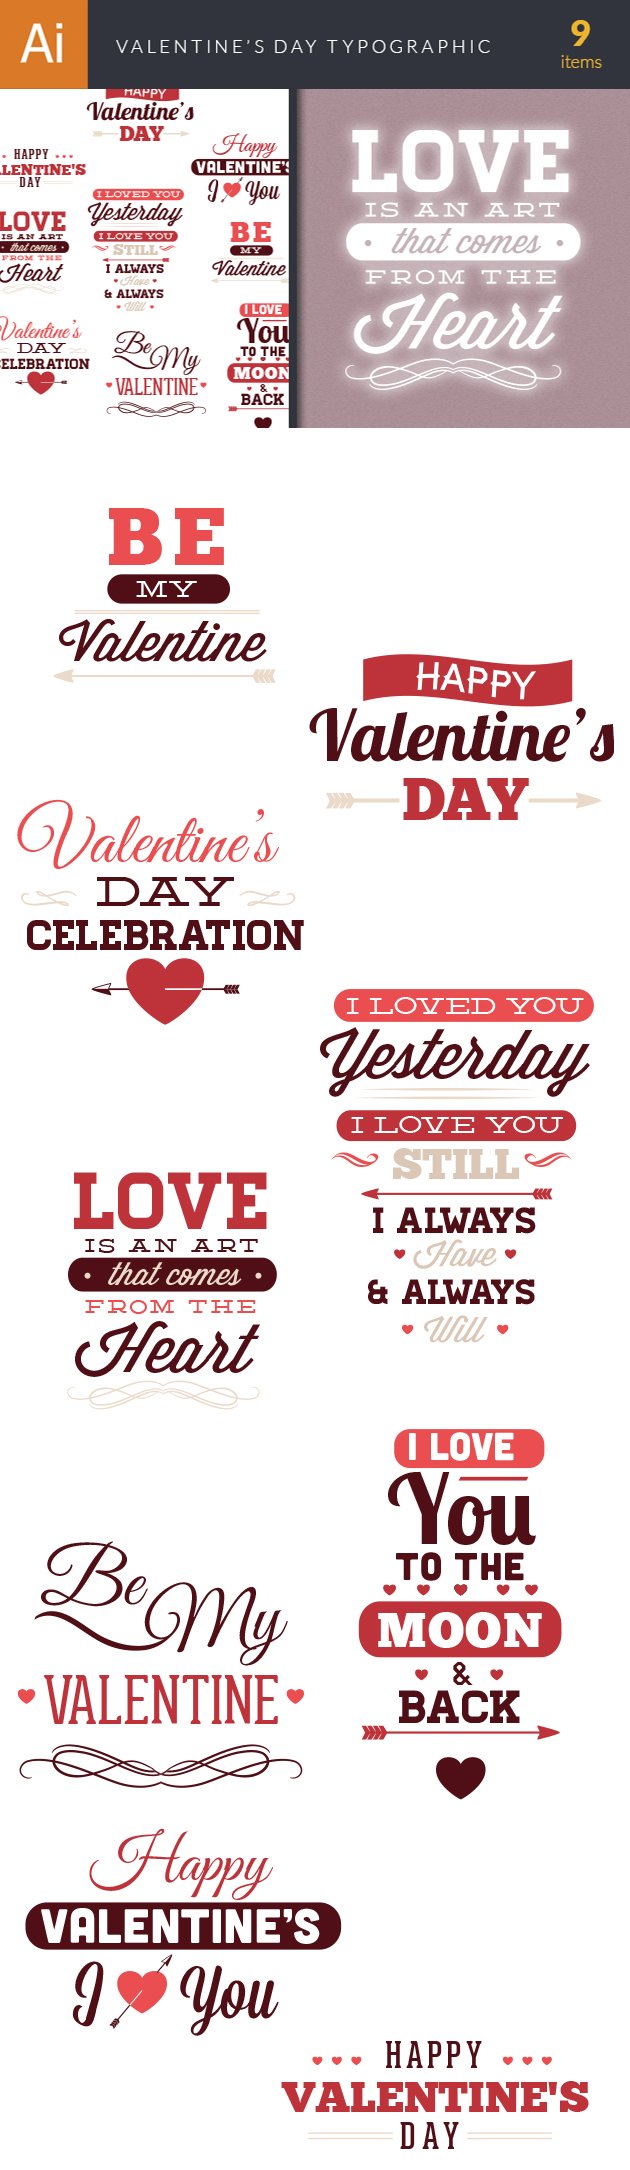 Valentine's Day Typographic Elements 2